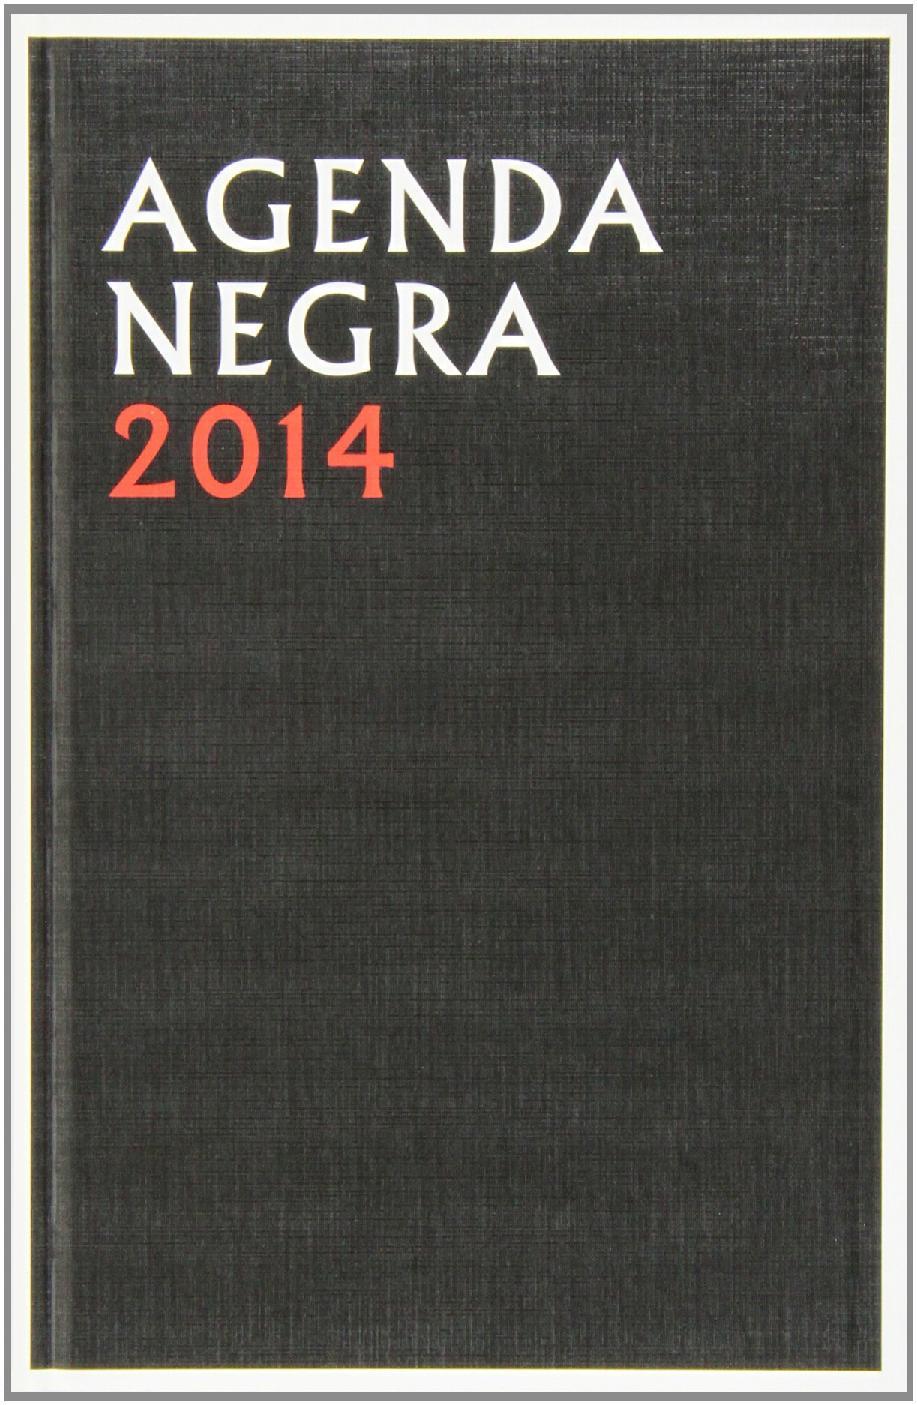 AGENDA NEGRA 2014